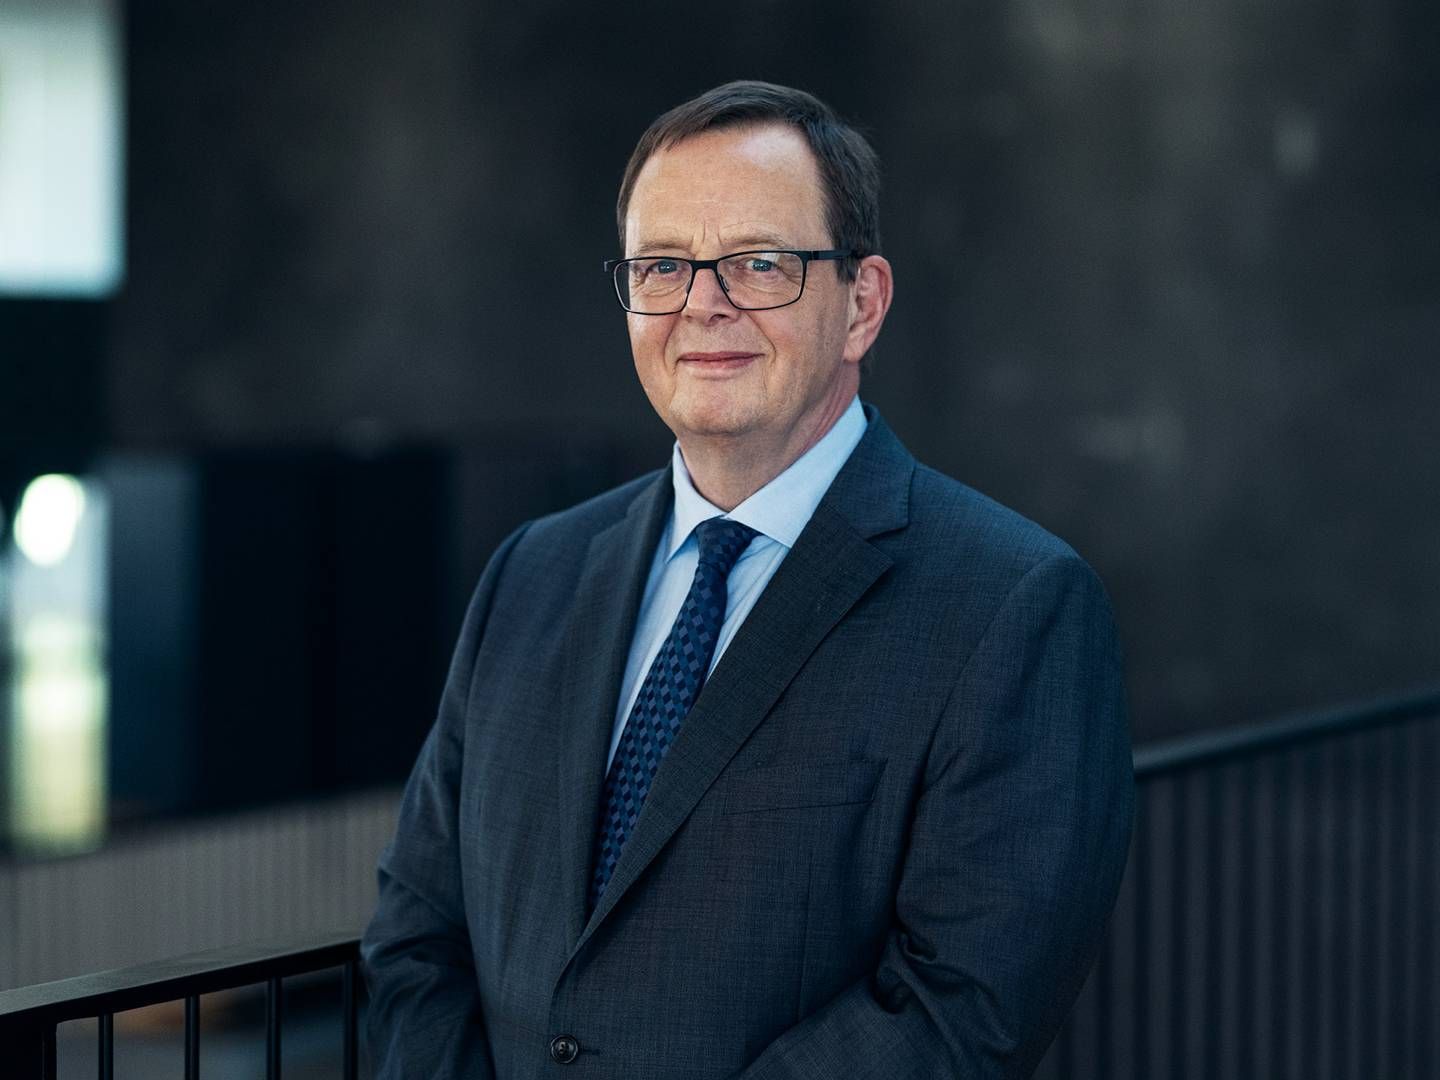 Nationalbankdirektør Christian Kettel Thomsen ser de danske banker stå et solidt sted i forhold til et årti siden. | Foto: Pr